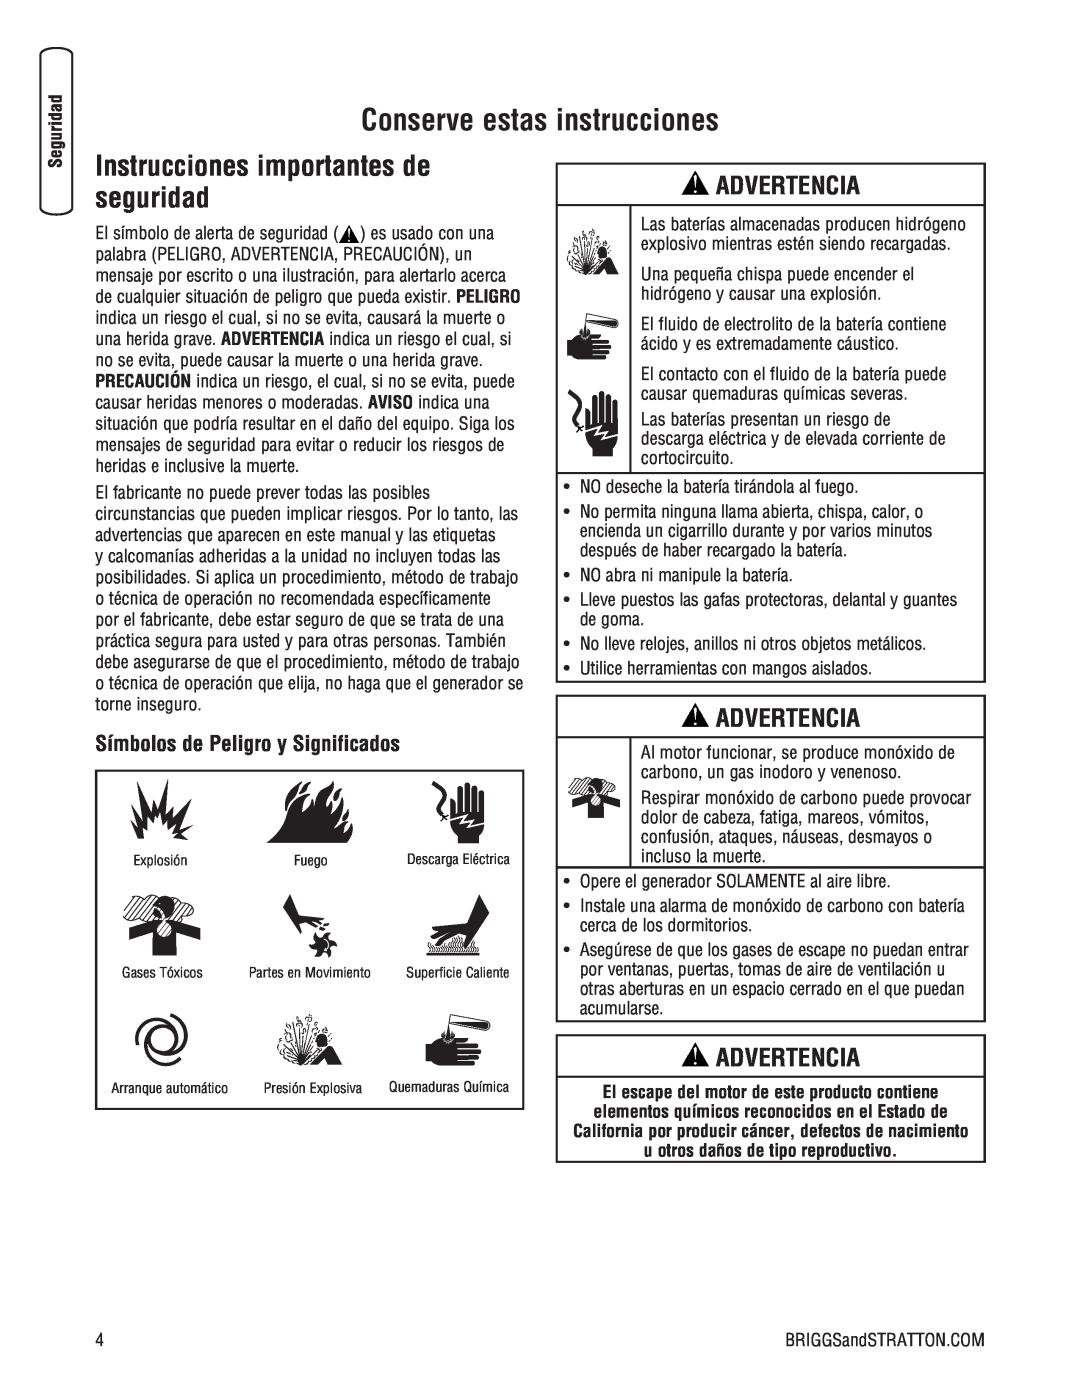 Briggs & Stratton 205051GS system manual advertencia, Símbolos de Peligro y Significados, Conserve estas instrucciones 